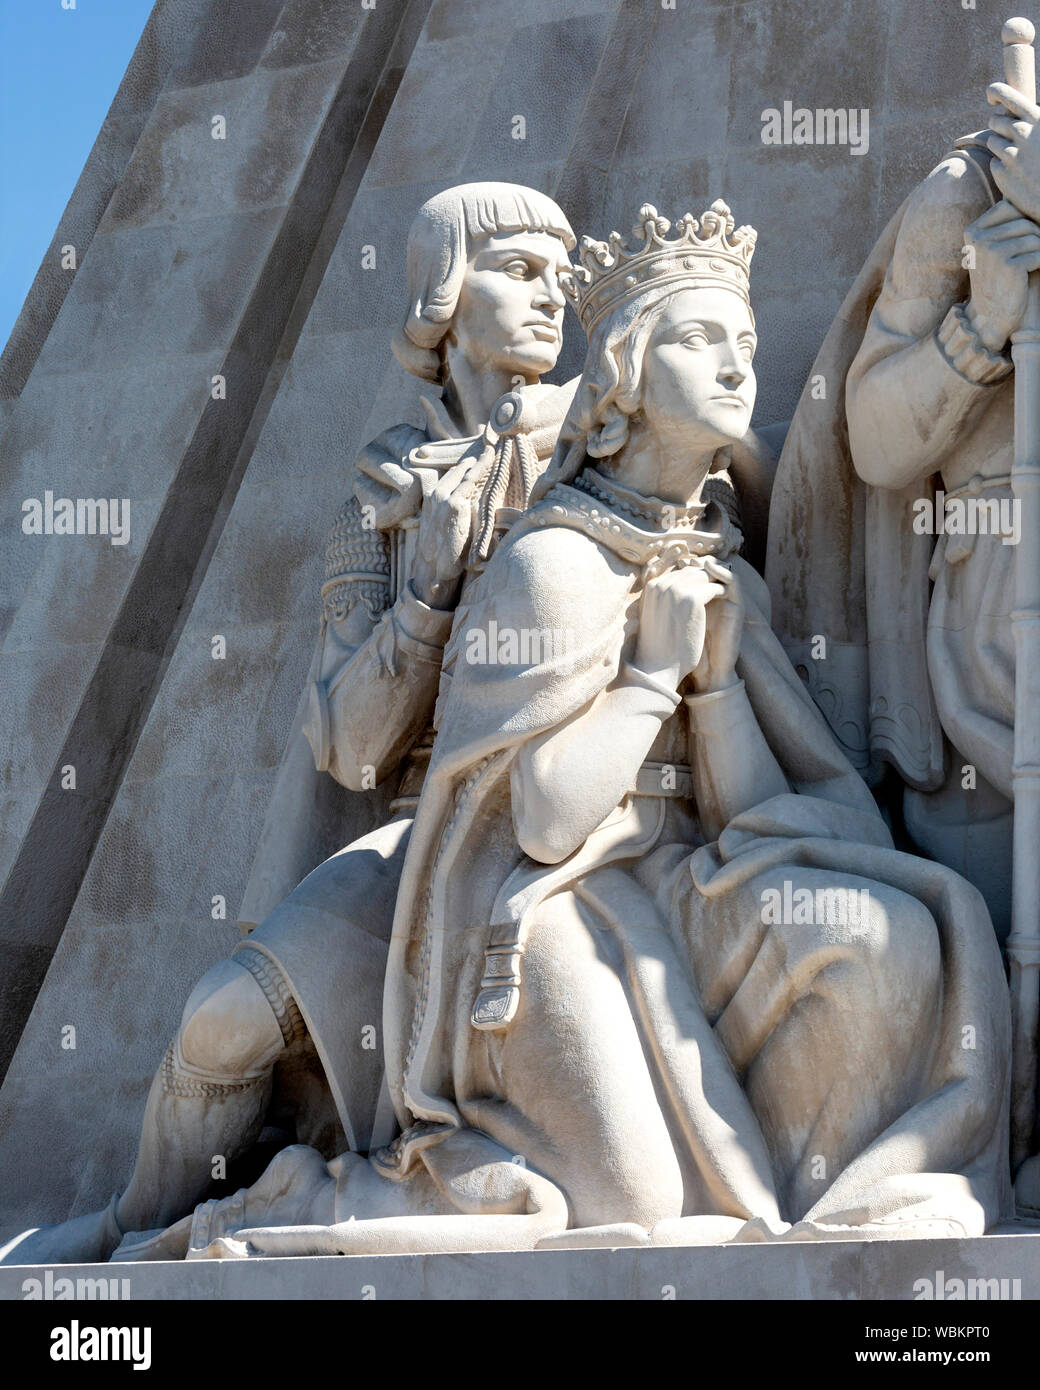 Dettaglio delle figure (Philippa di Lancaster e Peter Duca di Coimbra) sul monumento alle scoperte del nuovo mondo, Belem, Lisbona, Portogallo. Foto Stock